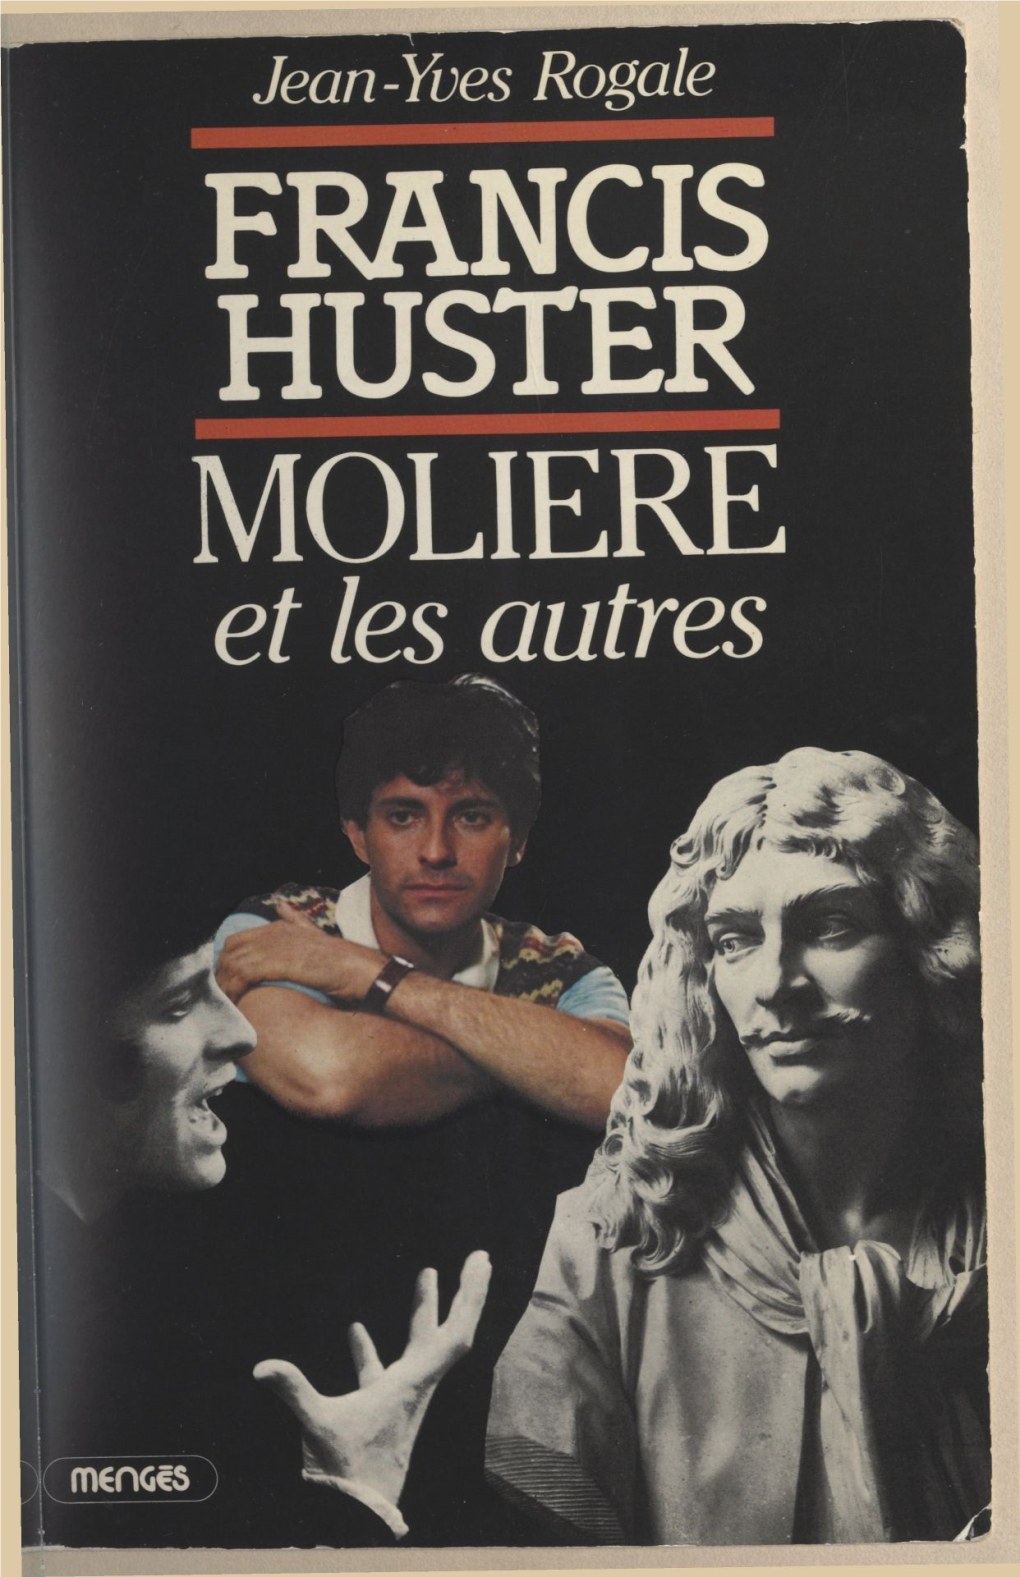 FRANCIS HUSTER, MOLIÈRE ET LES AUTRES... Du Même Auteur LE ROI ELVIS (Éditions MENGÈS) JEAN-YVES ROGALE